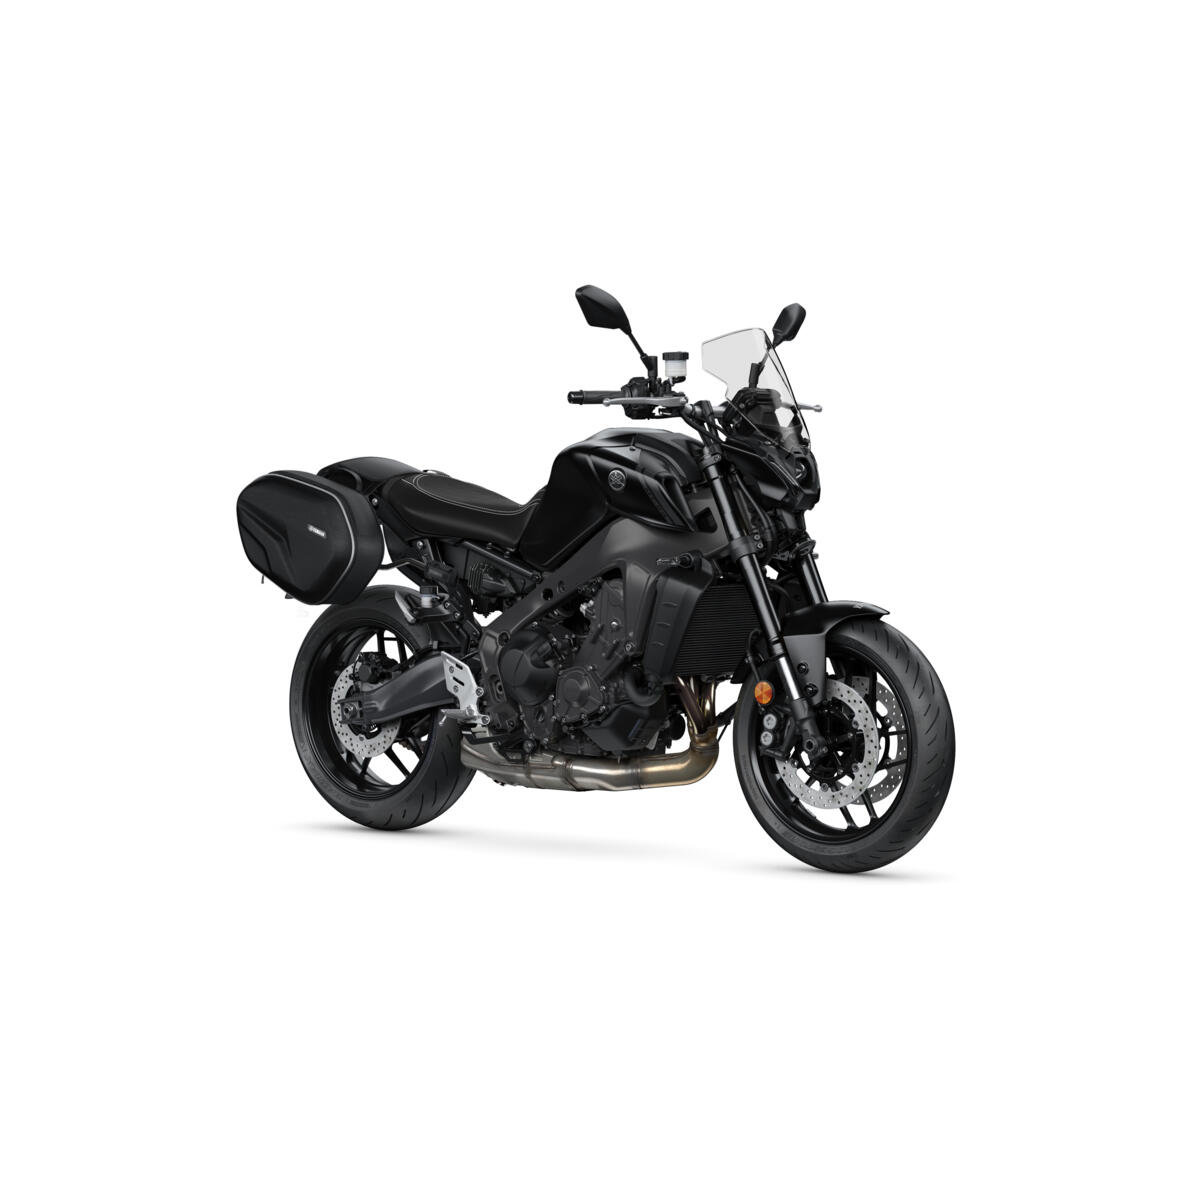 Den naturliga körställningen och utmärkta räckvidden för bränslet gör din MT-09 till den perfekta motorcykeln för helgresor. 
Därför har Yamaha skapat ett weekendpaket, för att se till att du kan njuta av varje minut av din tid oavsett om du sitter på eller har klivit av motorcykeln.